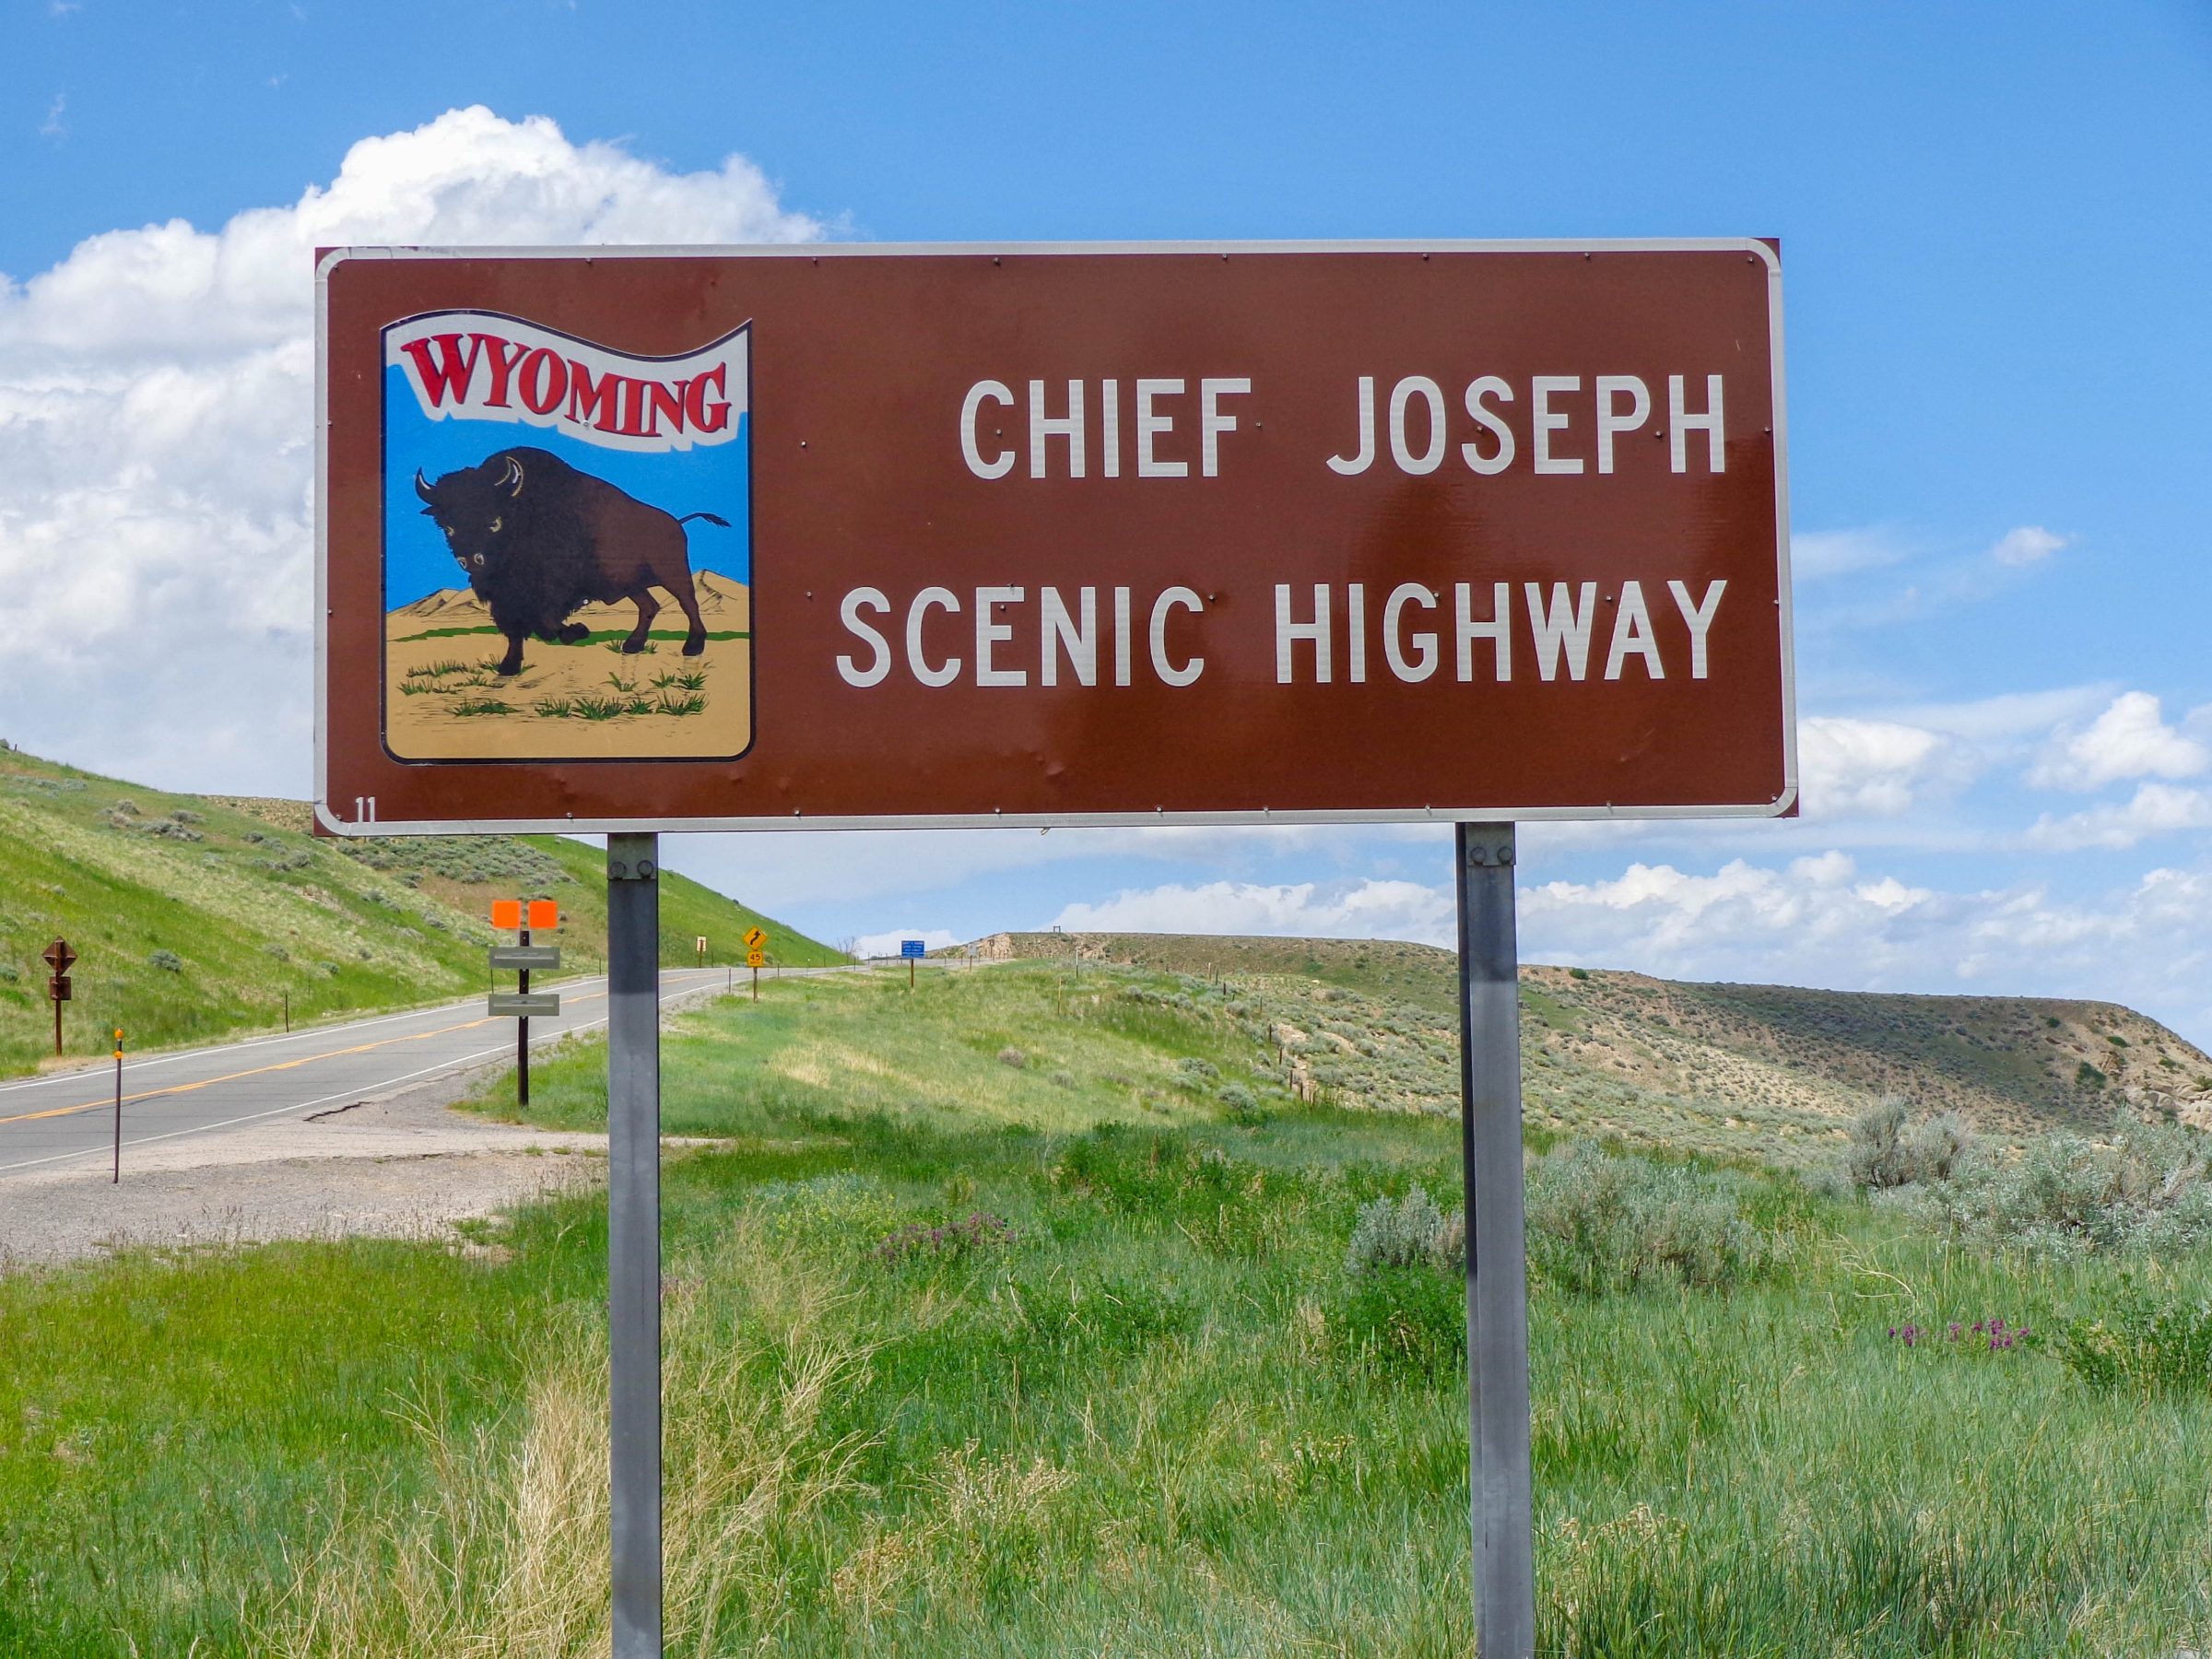 Chief Joseph Scenic Highway